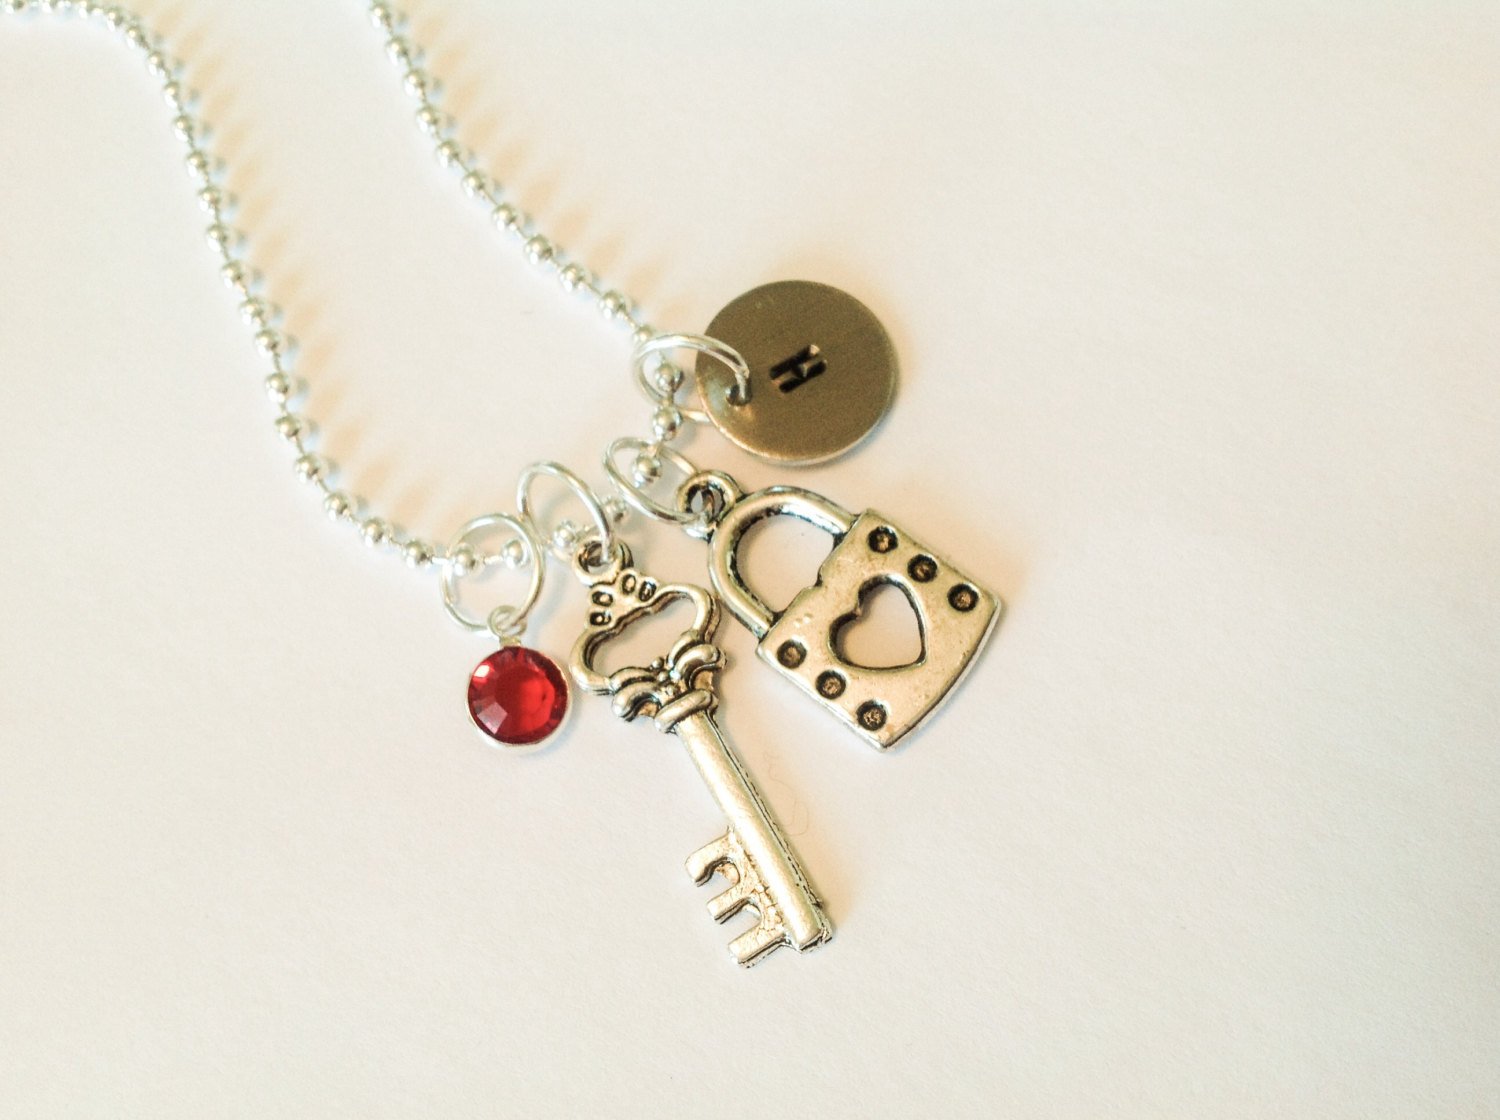 Key & Lock Charm Necklace